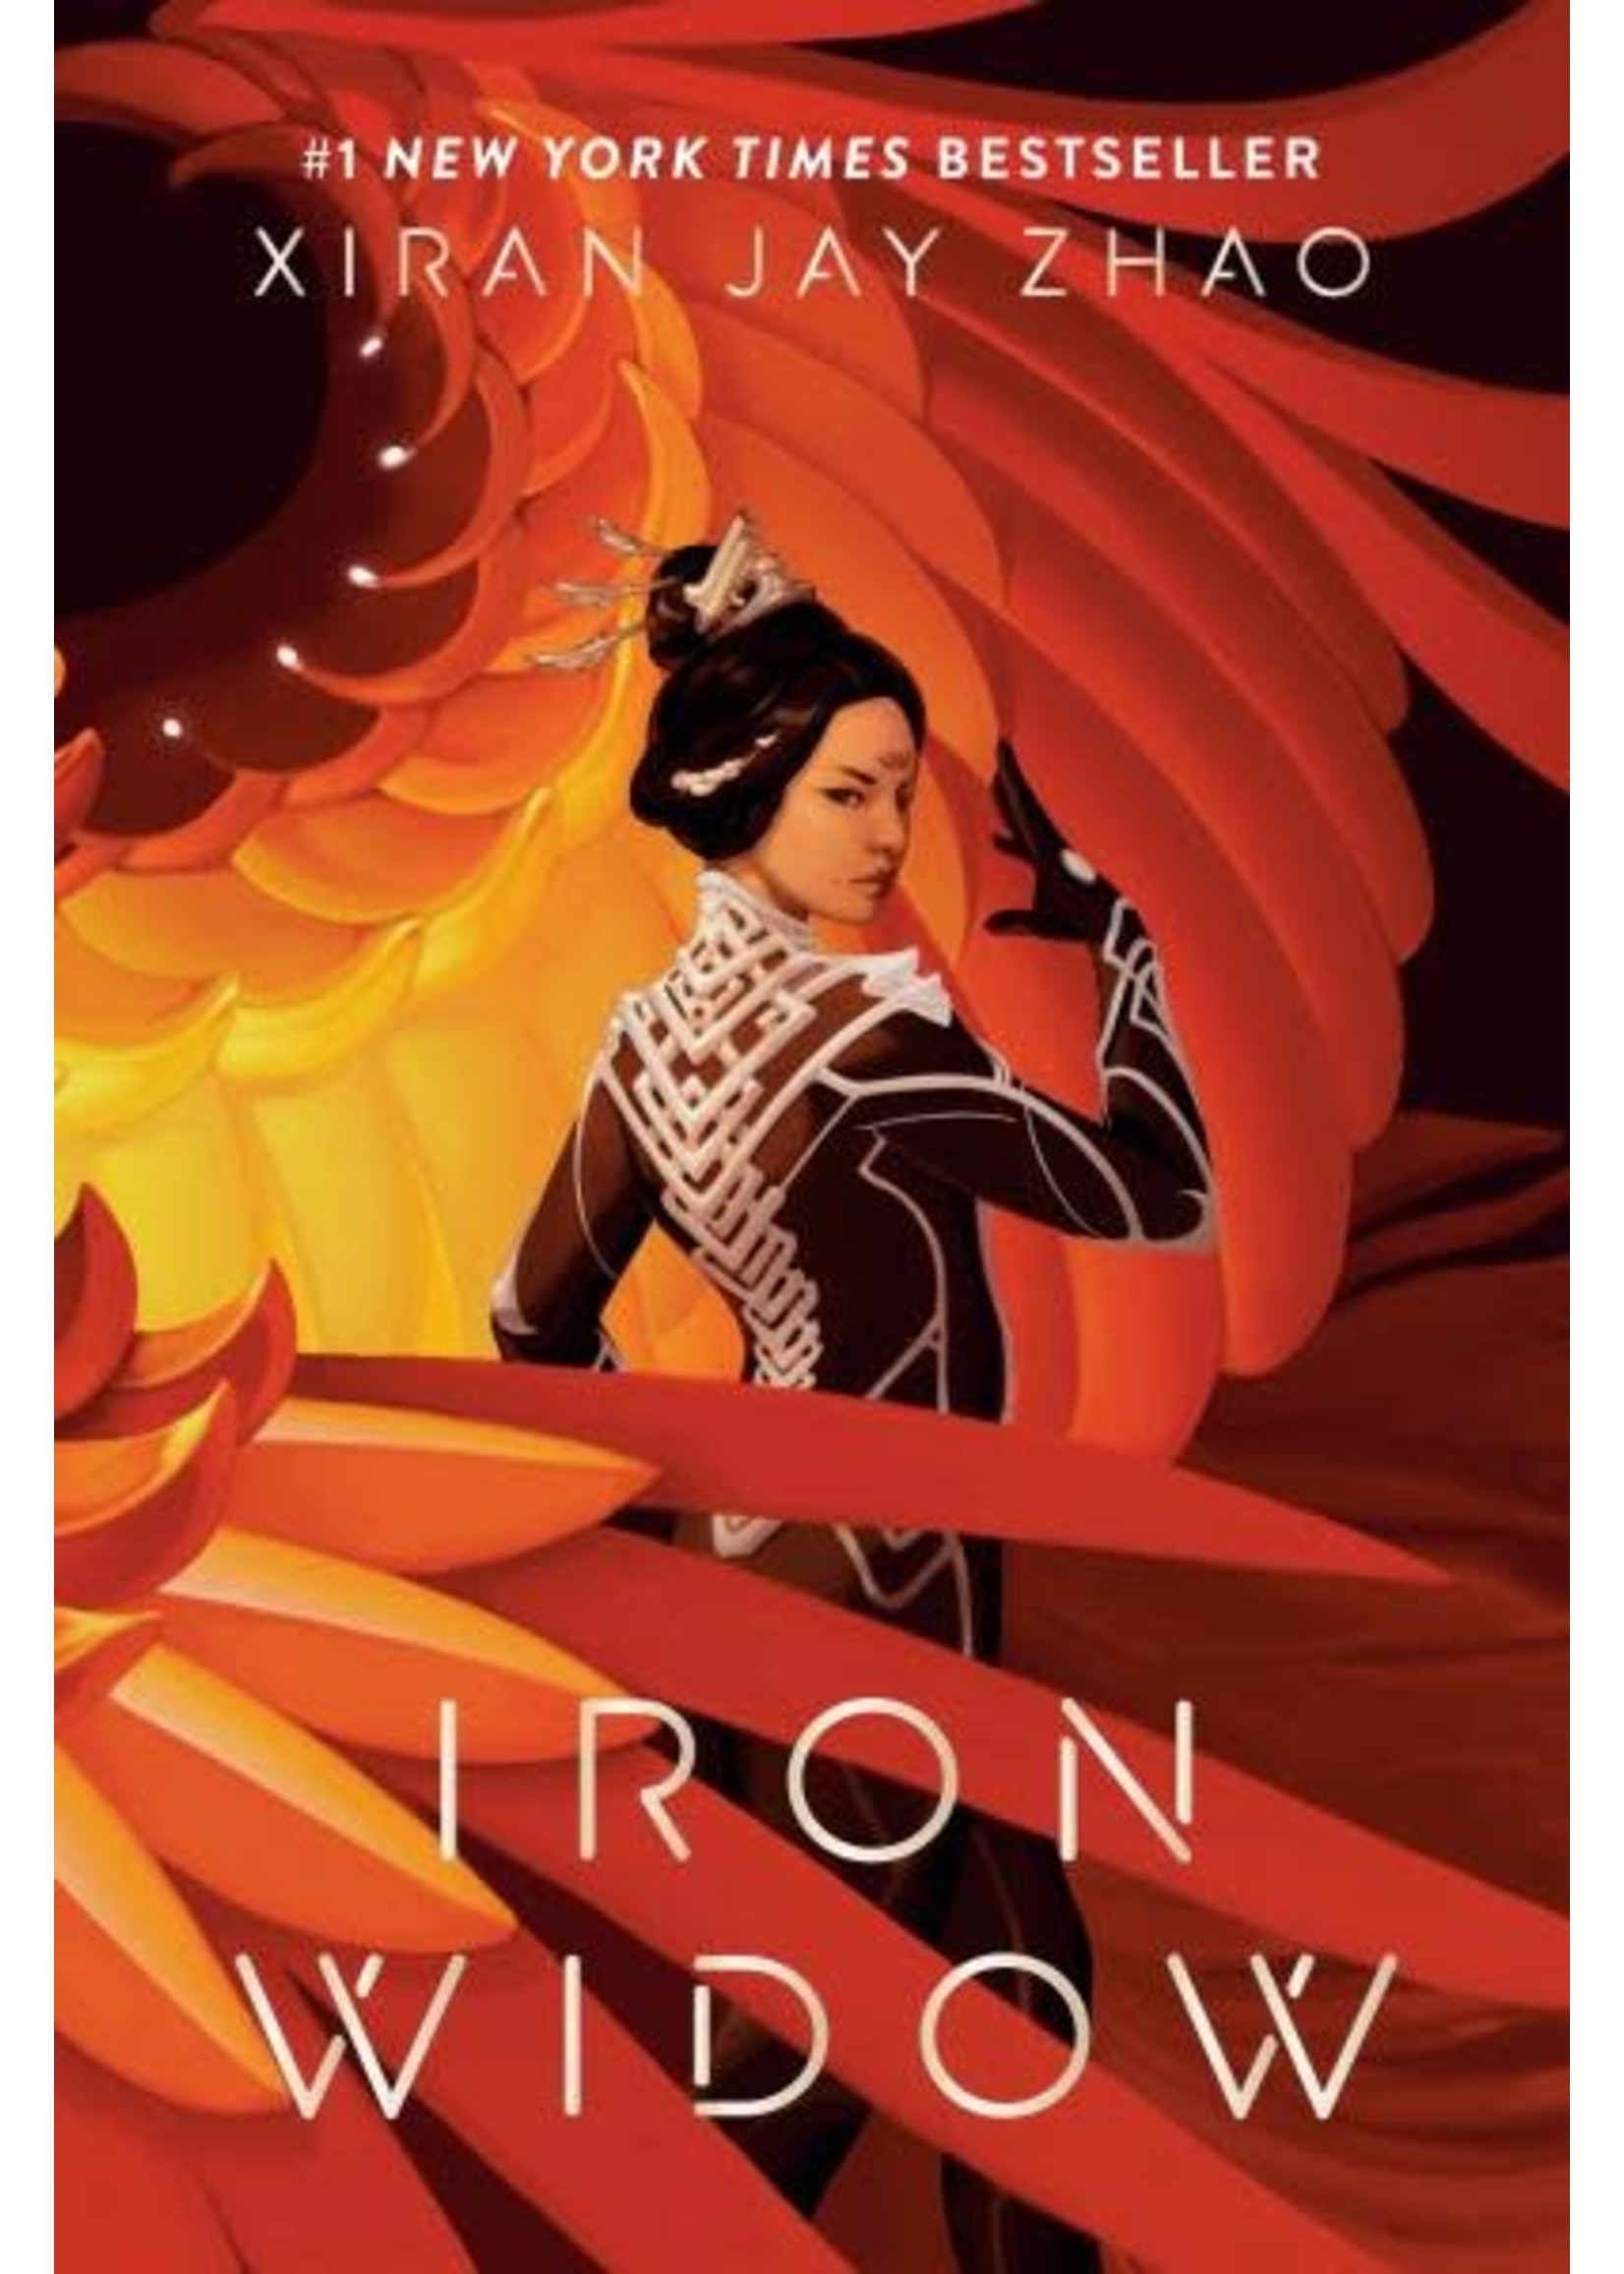 Iron Widow (Iron Widow #1) by Xiran Jay Zhao